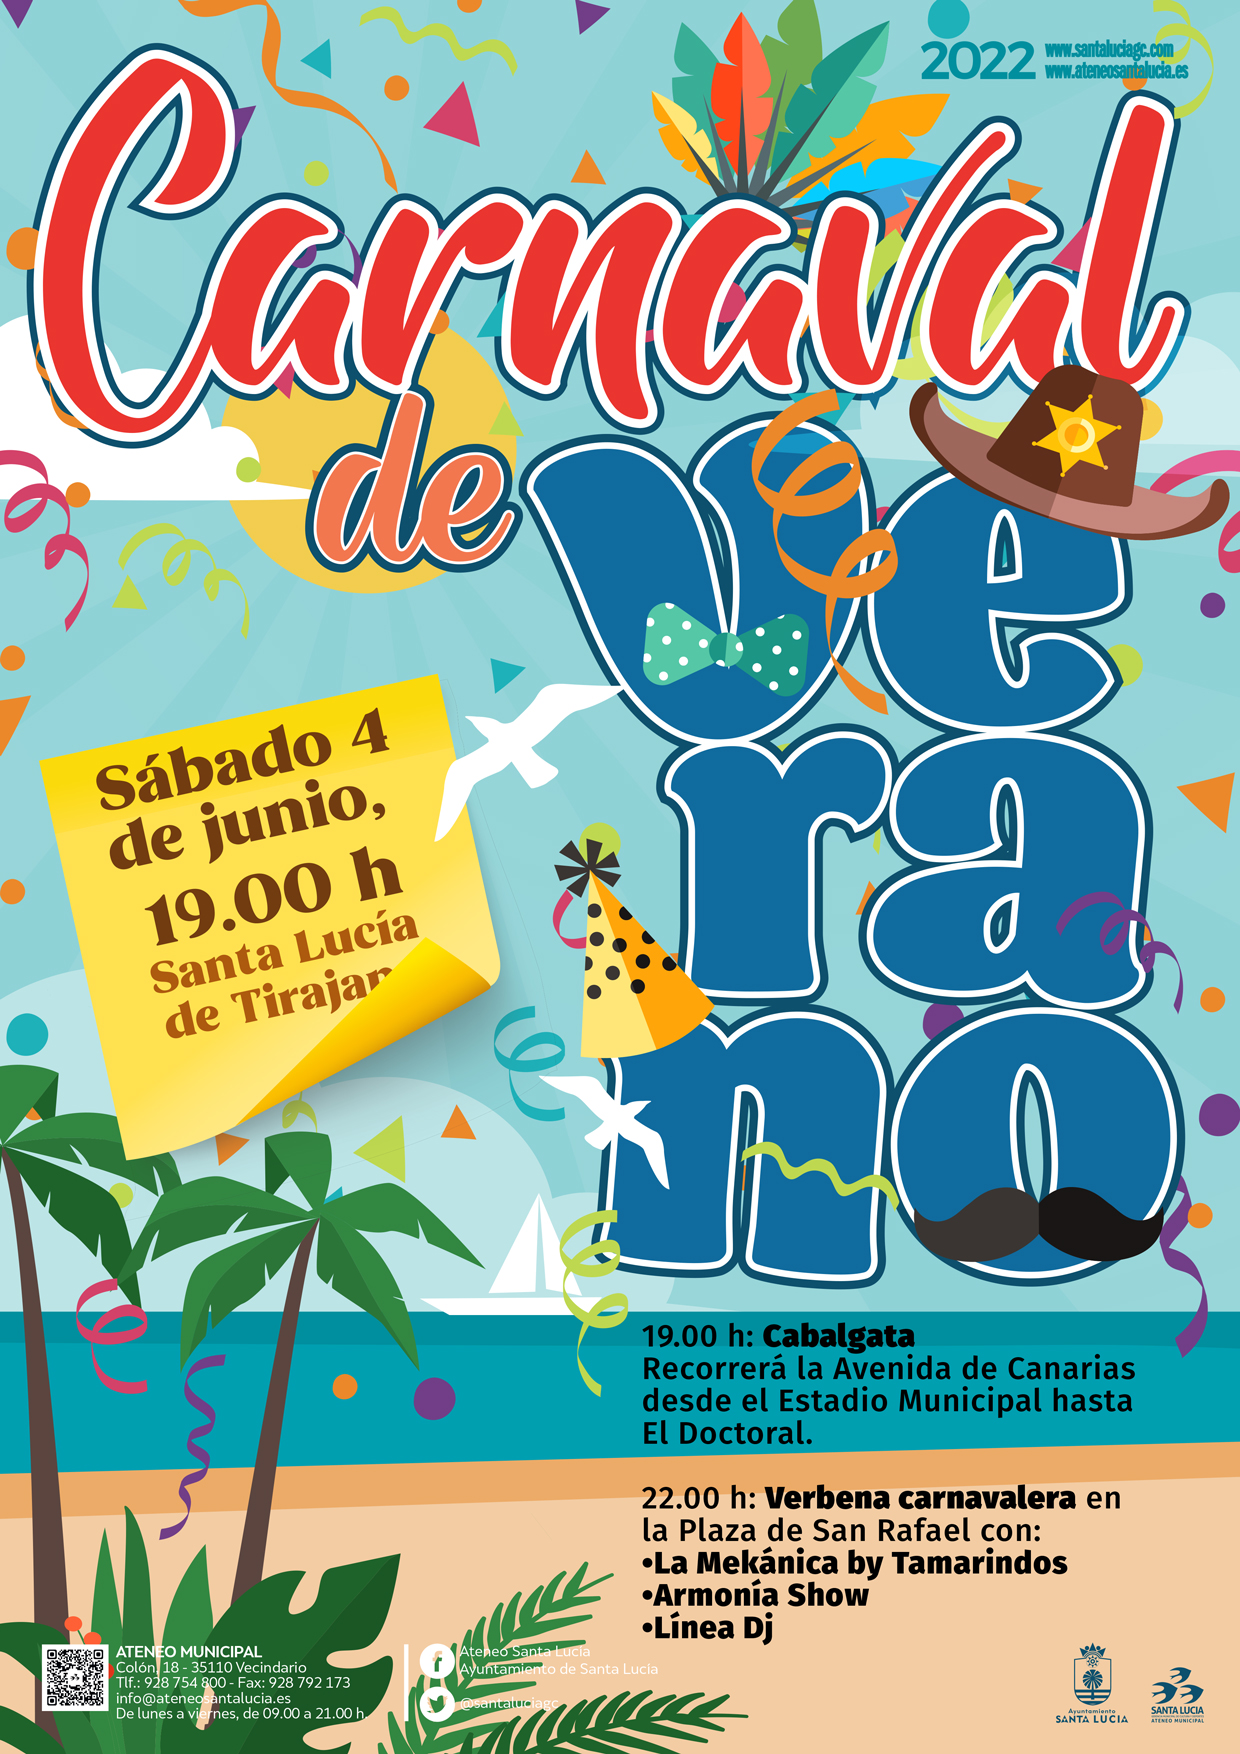 El Ayuntamiento celebra el 4 de junio el Carnaval de Verano con la Cabalgata  y una verbena con La  Mekánica by  Tamarindos, Armonía Show  y Línea DJ